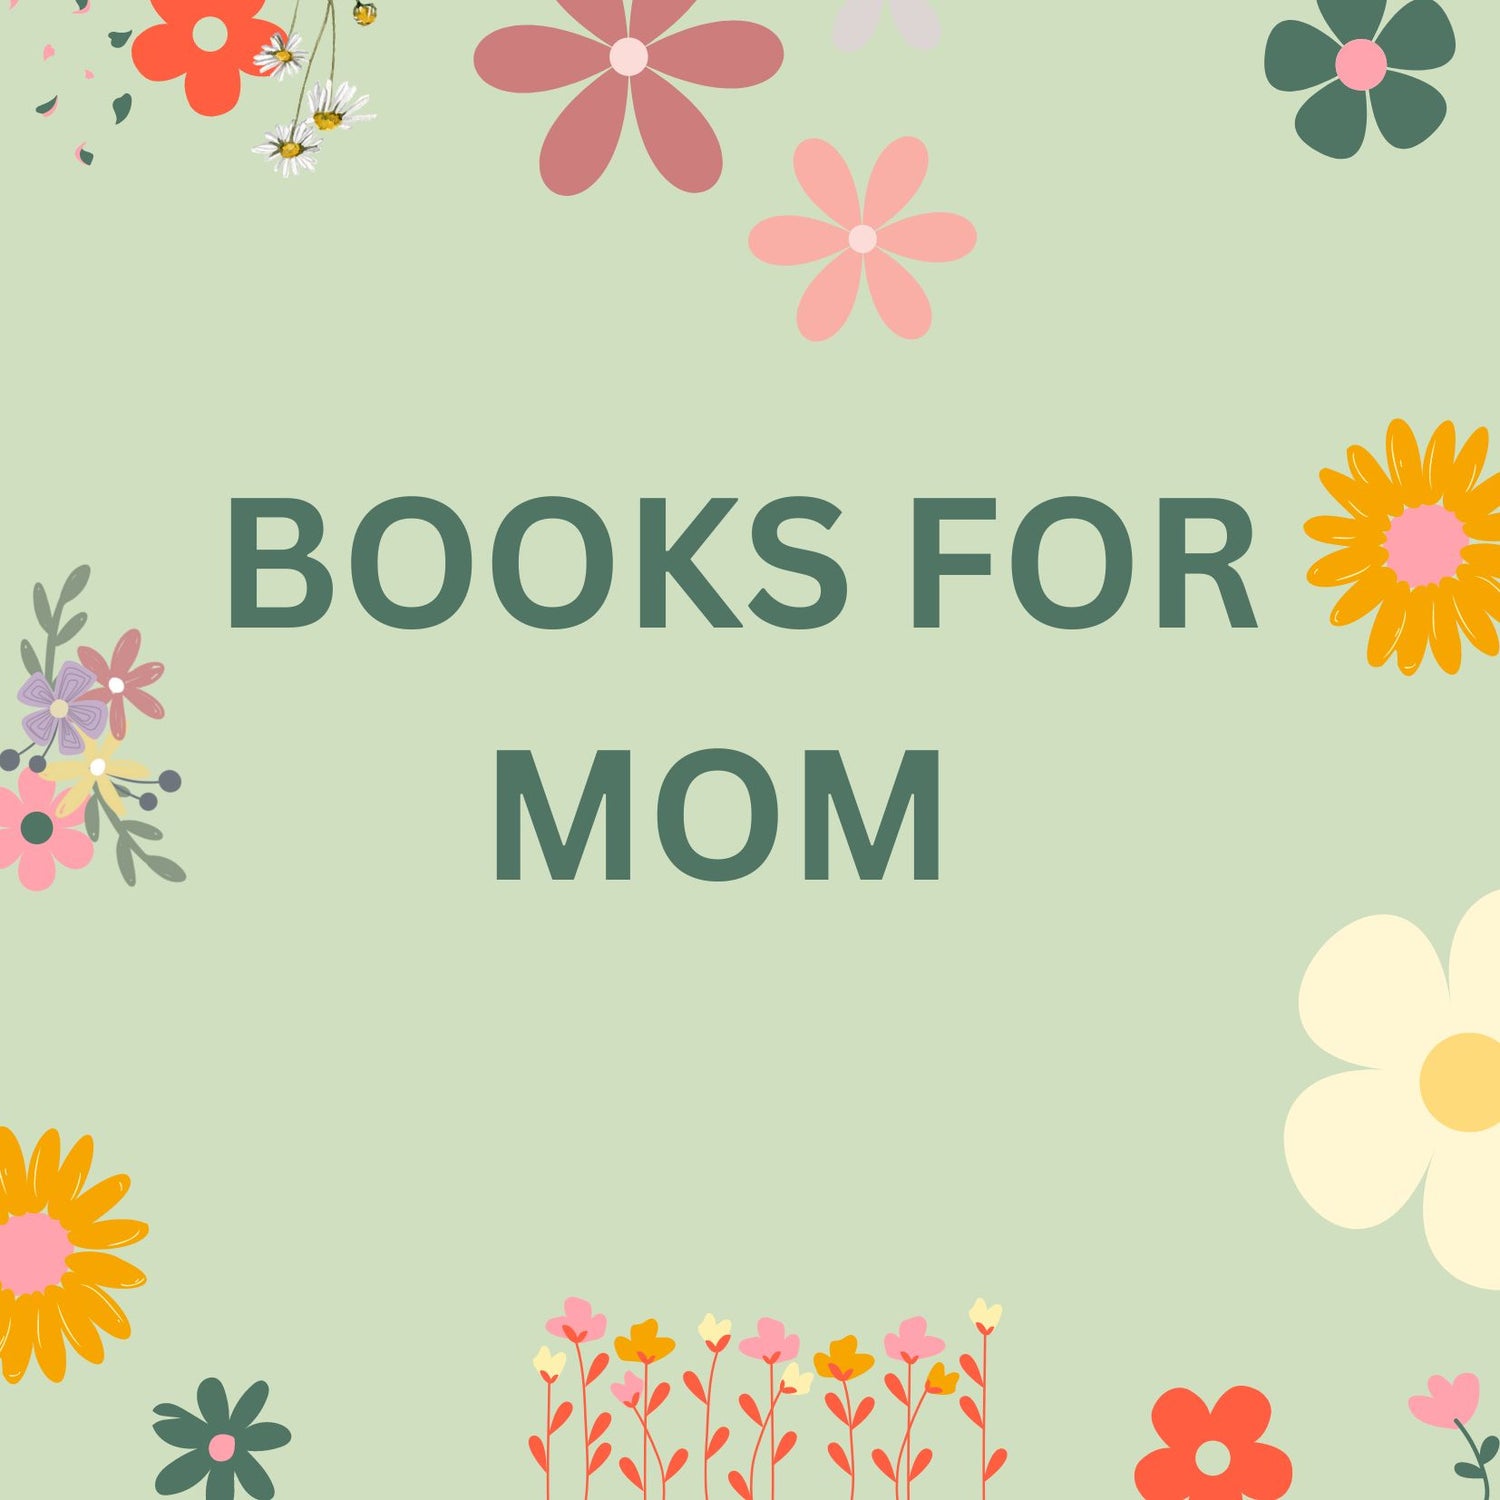 Books for Mom